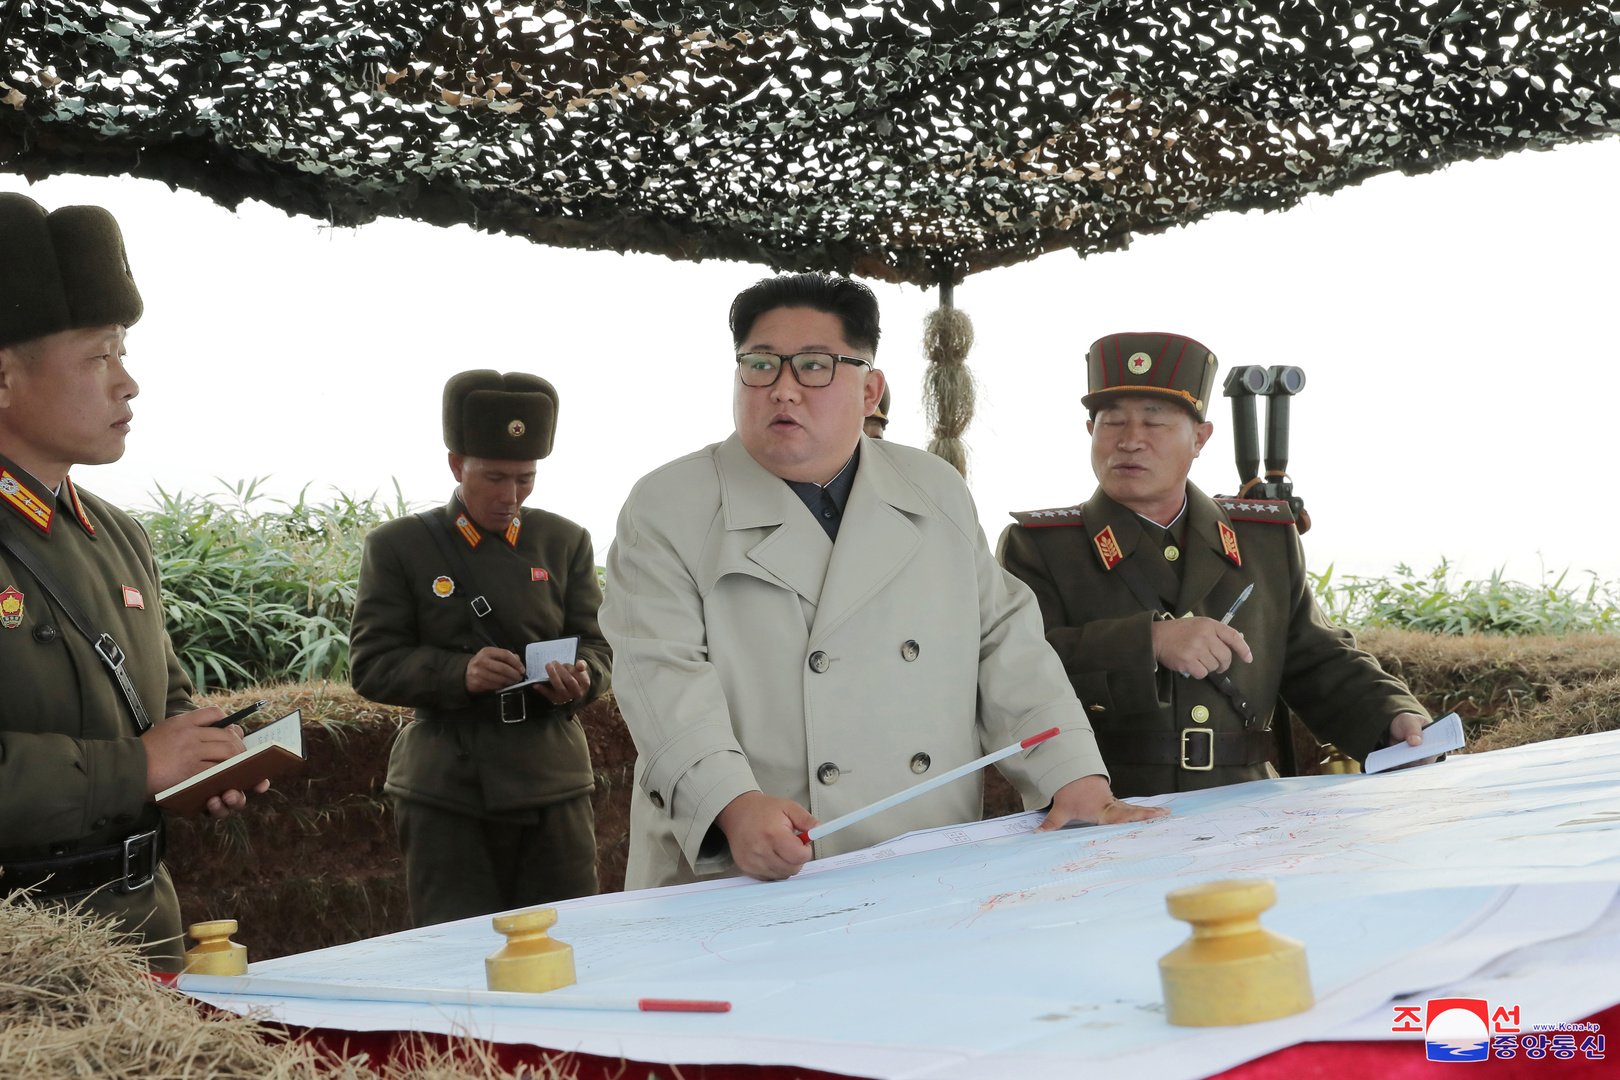 كوريا الشمالية: على الولايات المتحدة الامتناع عن الاستفزازات إذا كانت تريد أن تنهي هذا العام بسلام